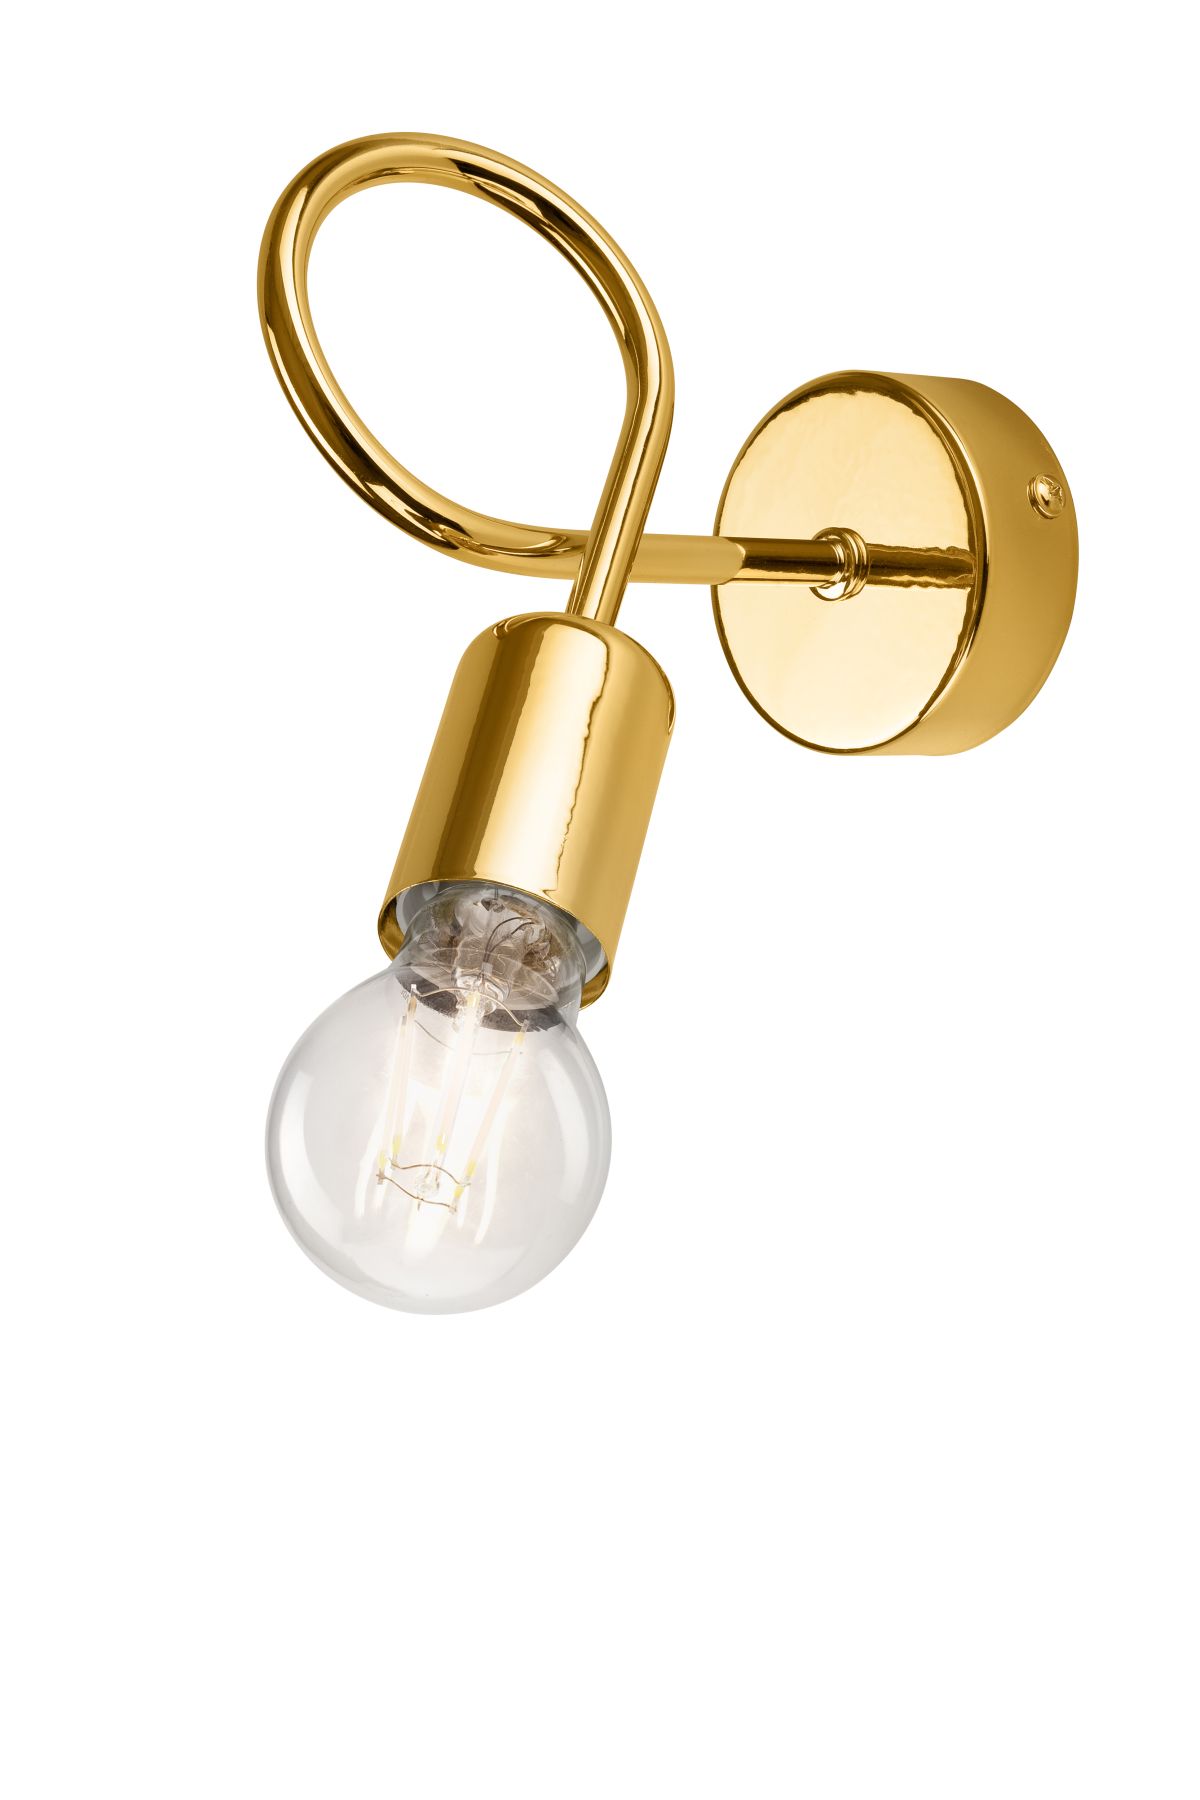 Stylische Wandlampe MADALYNN Gold Metall Lampe